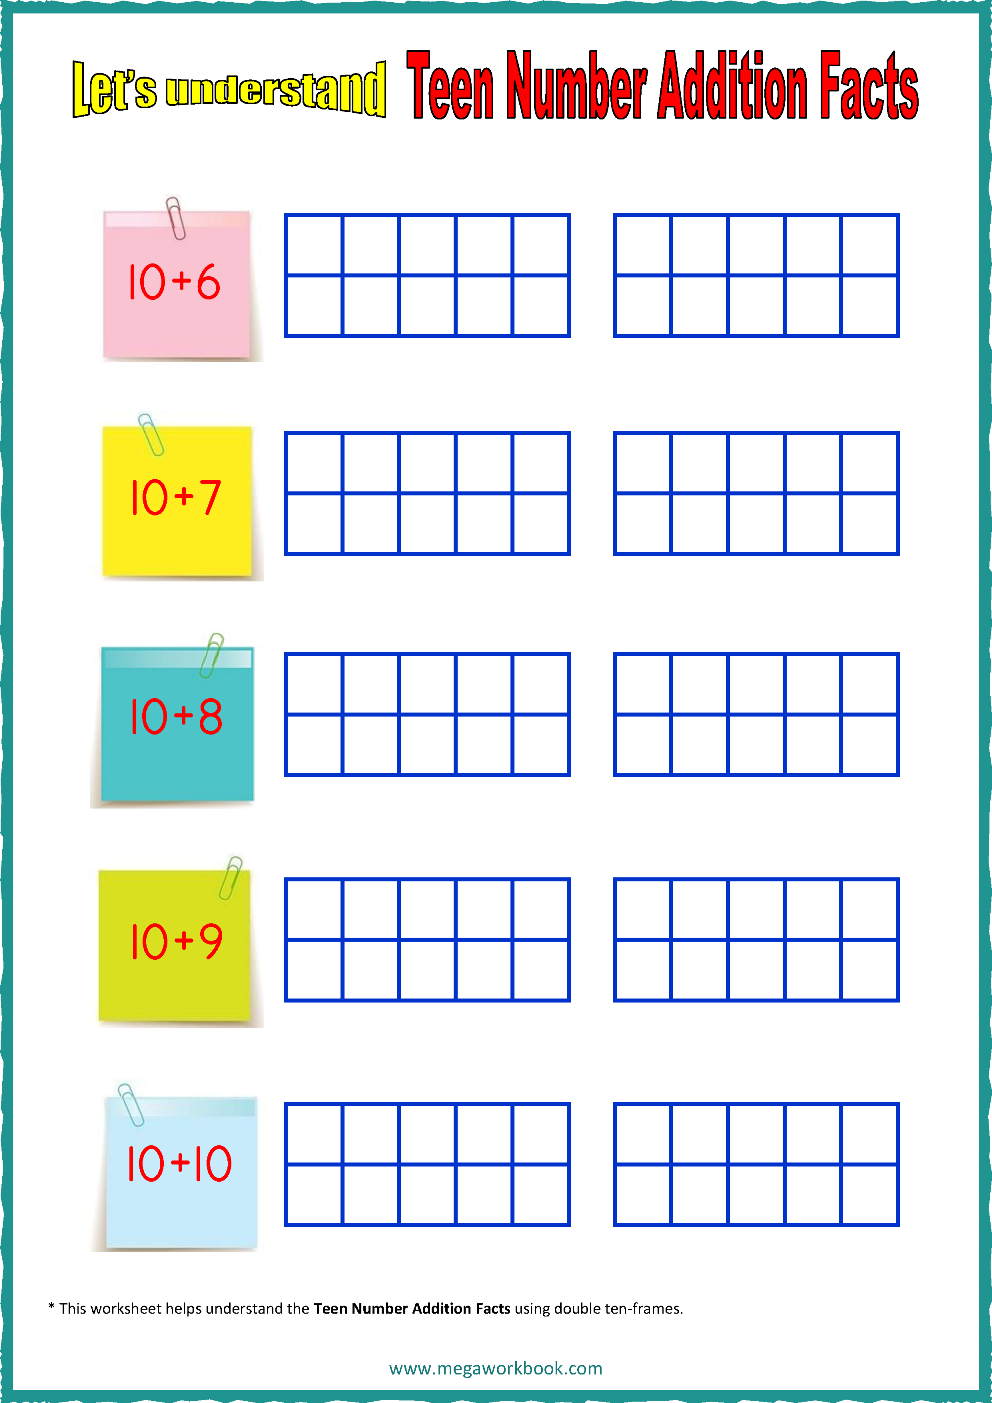 Ten Frame Worksheets Ten Frames 10 Frames Counting Addition Subtraction Even Odd Number Relationships Etc Megaworkbook